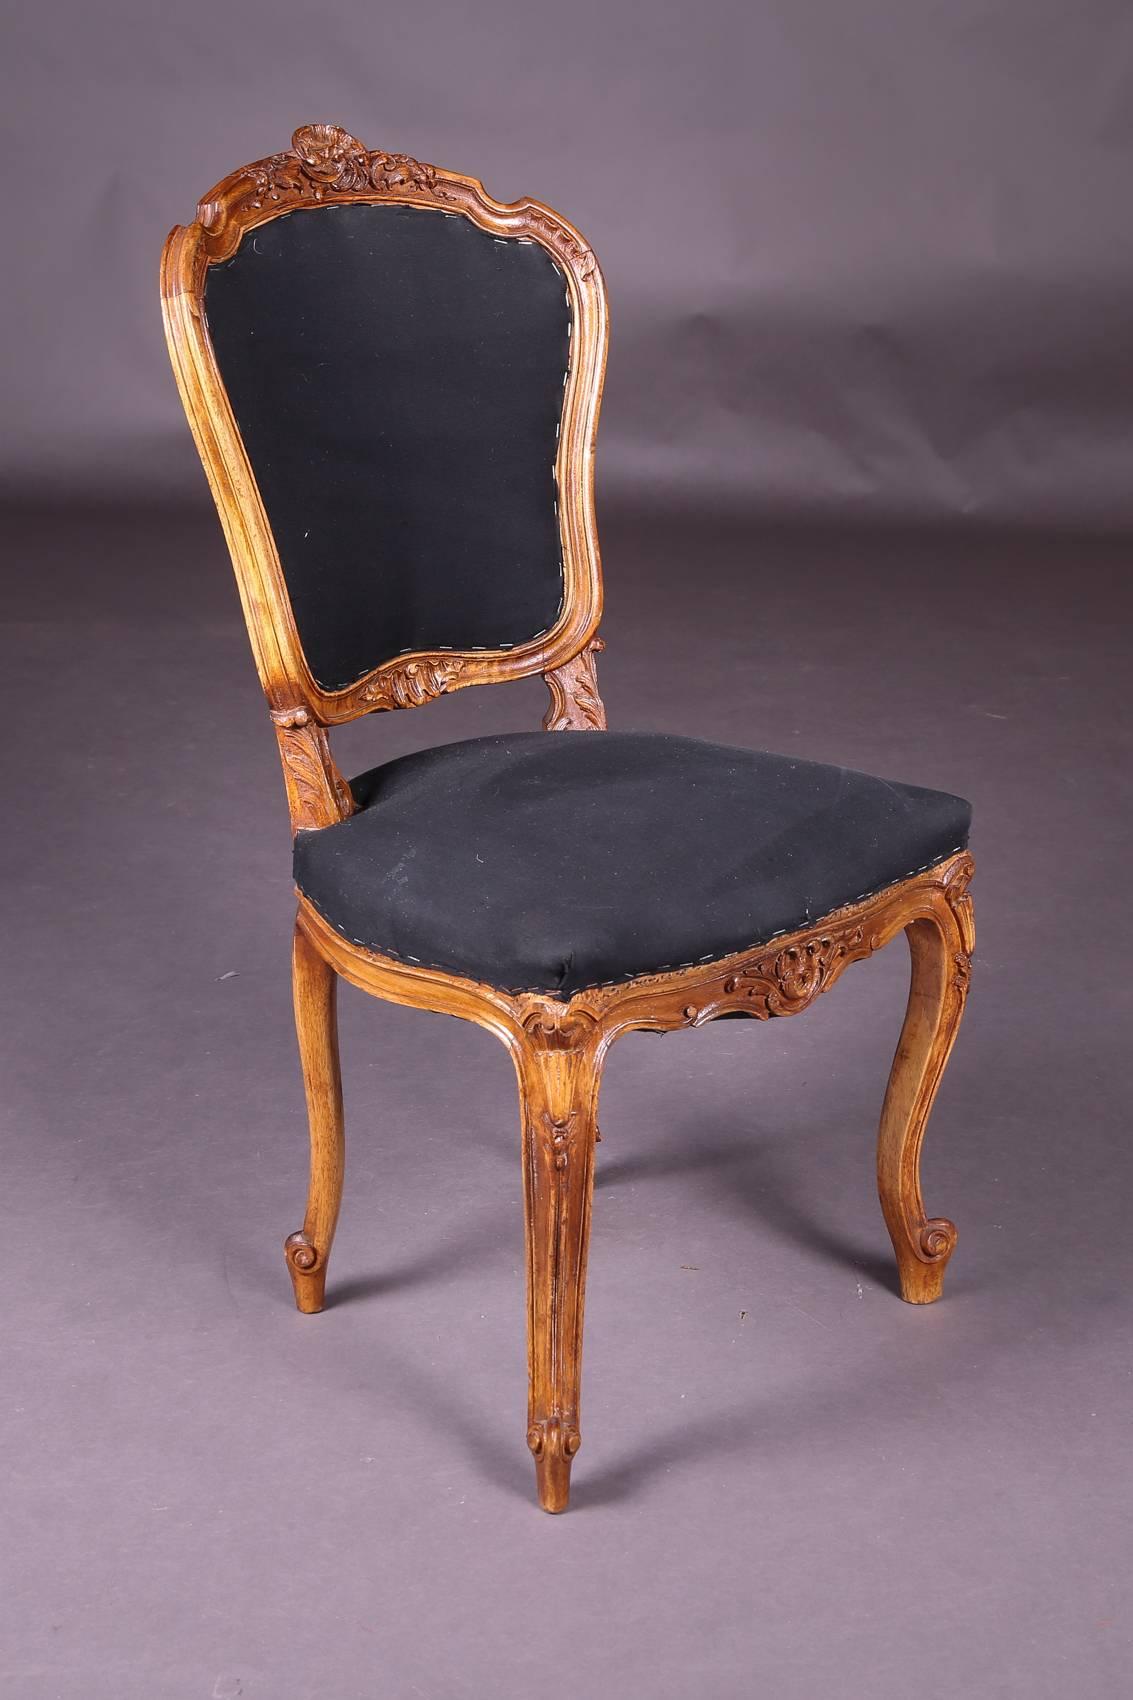 Rococo chair walnut, circa 1870
Solid walnut. Richly ornate body on curved legs.

(C-121).